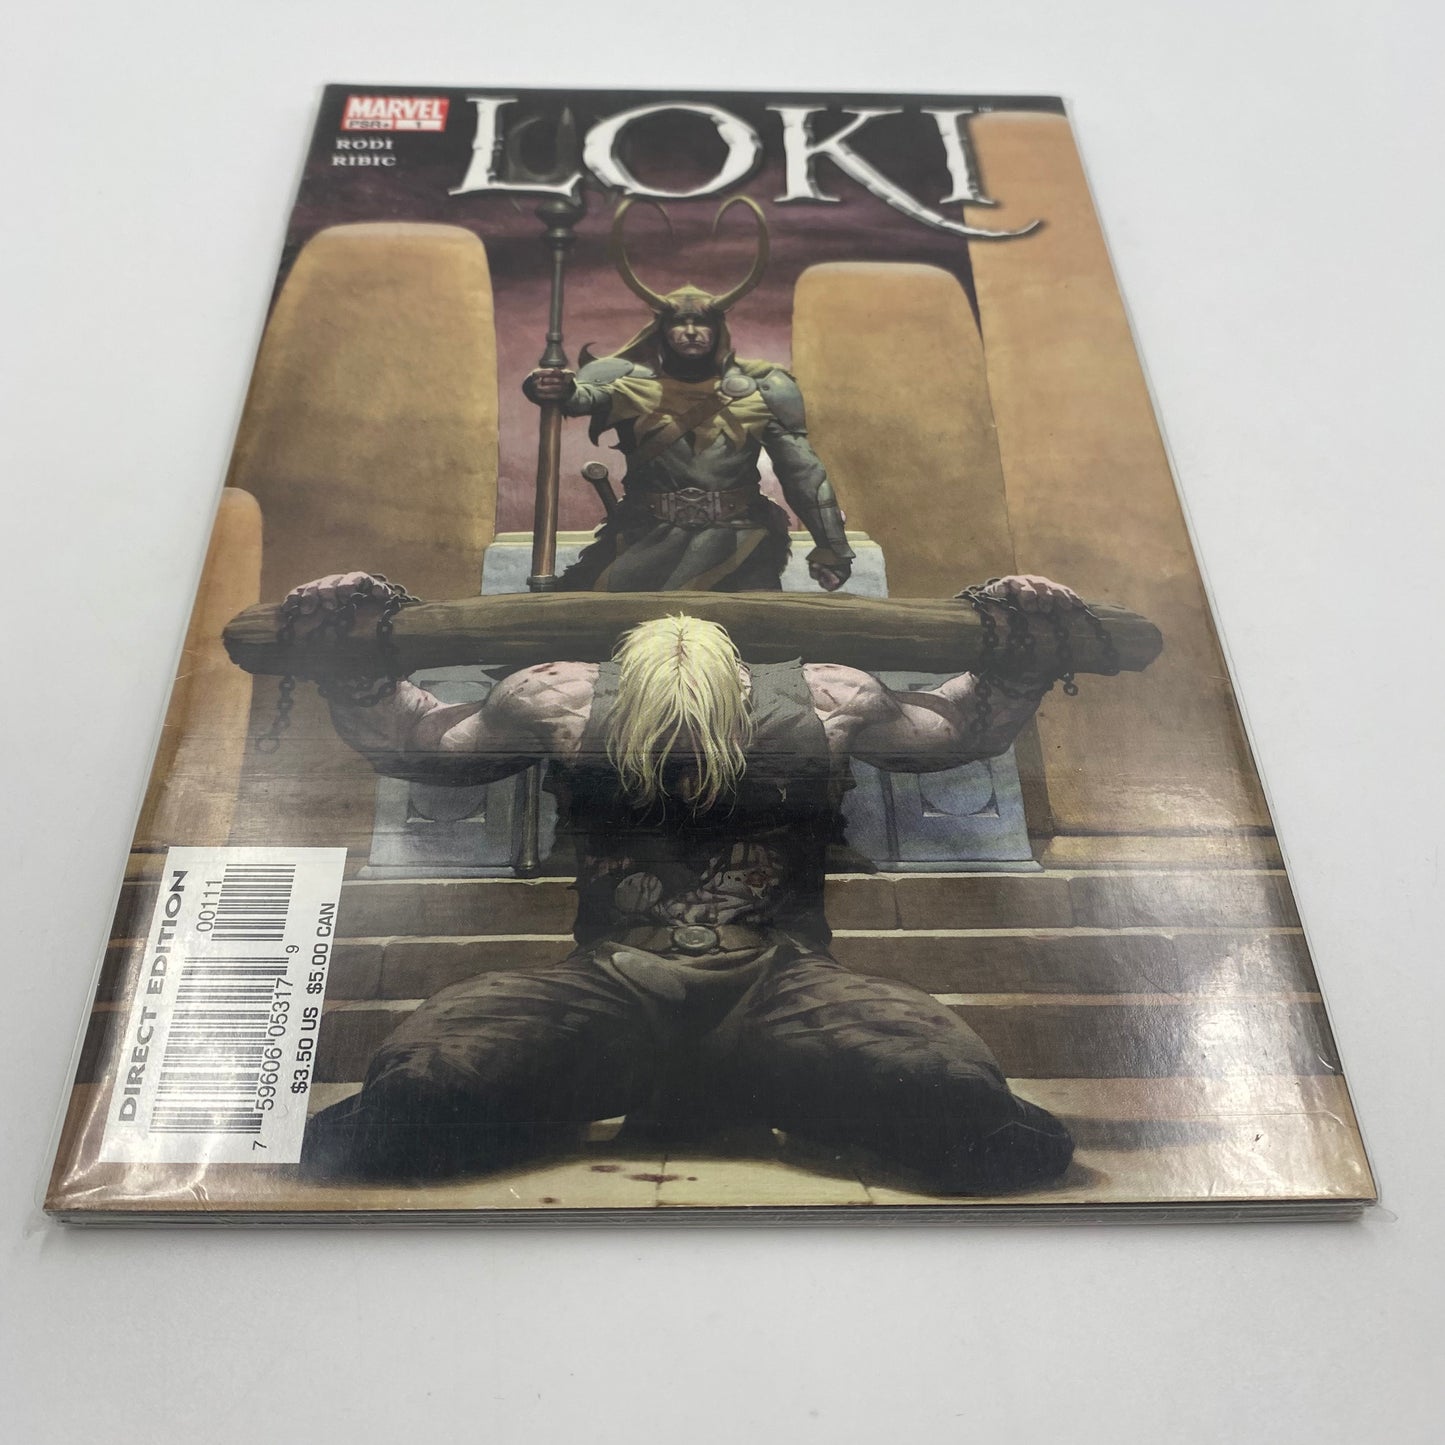 Loki #1-4 (2004) Marvel